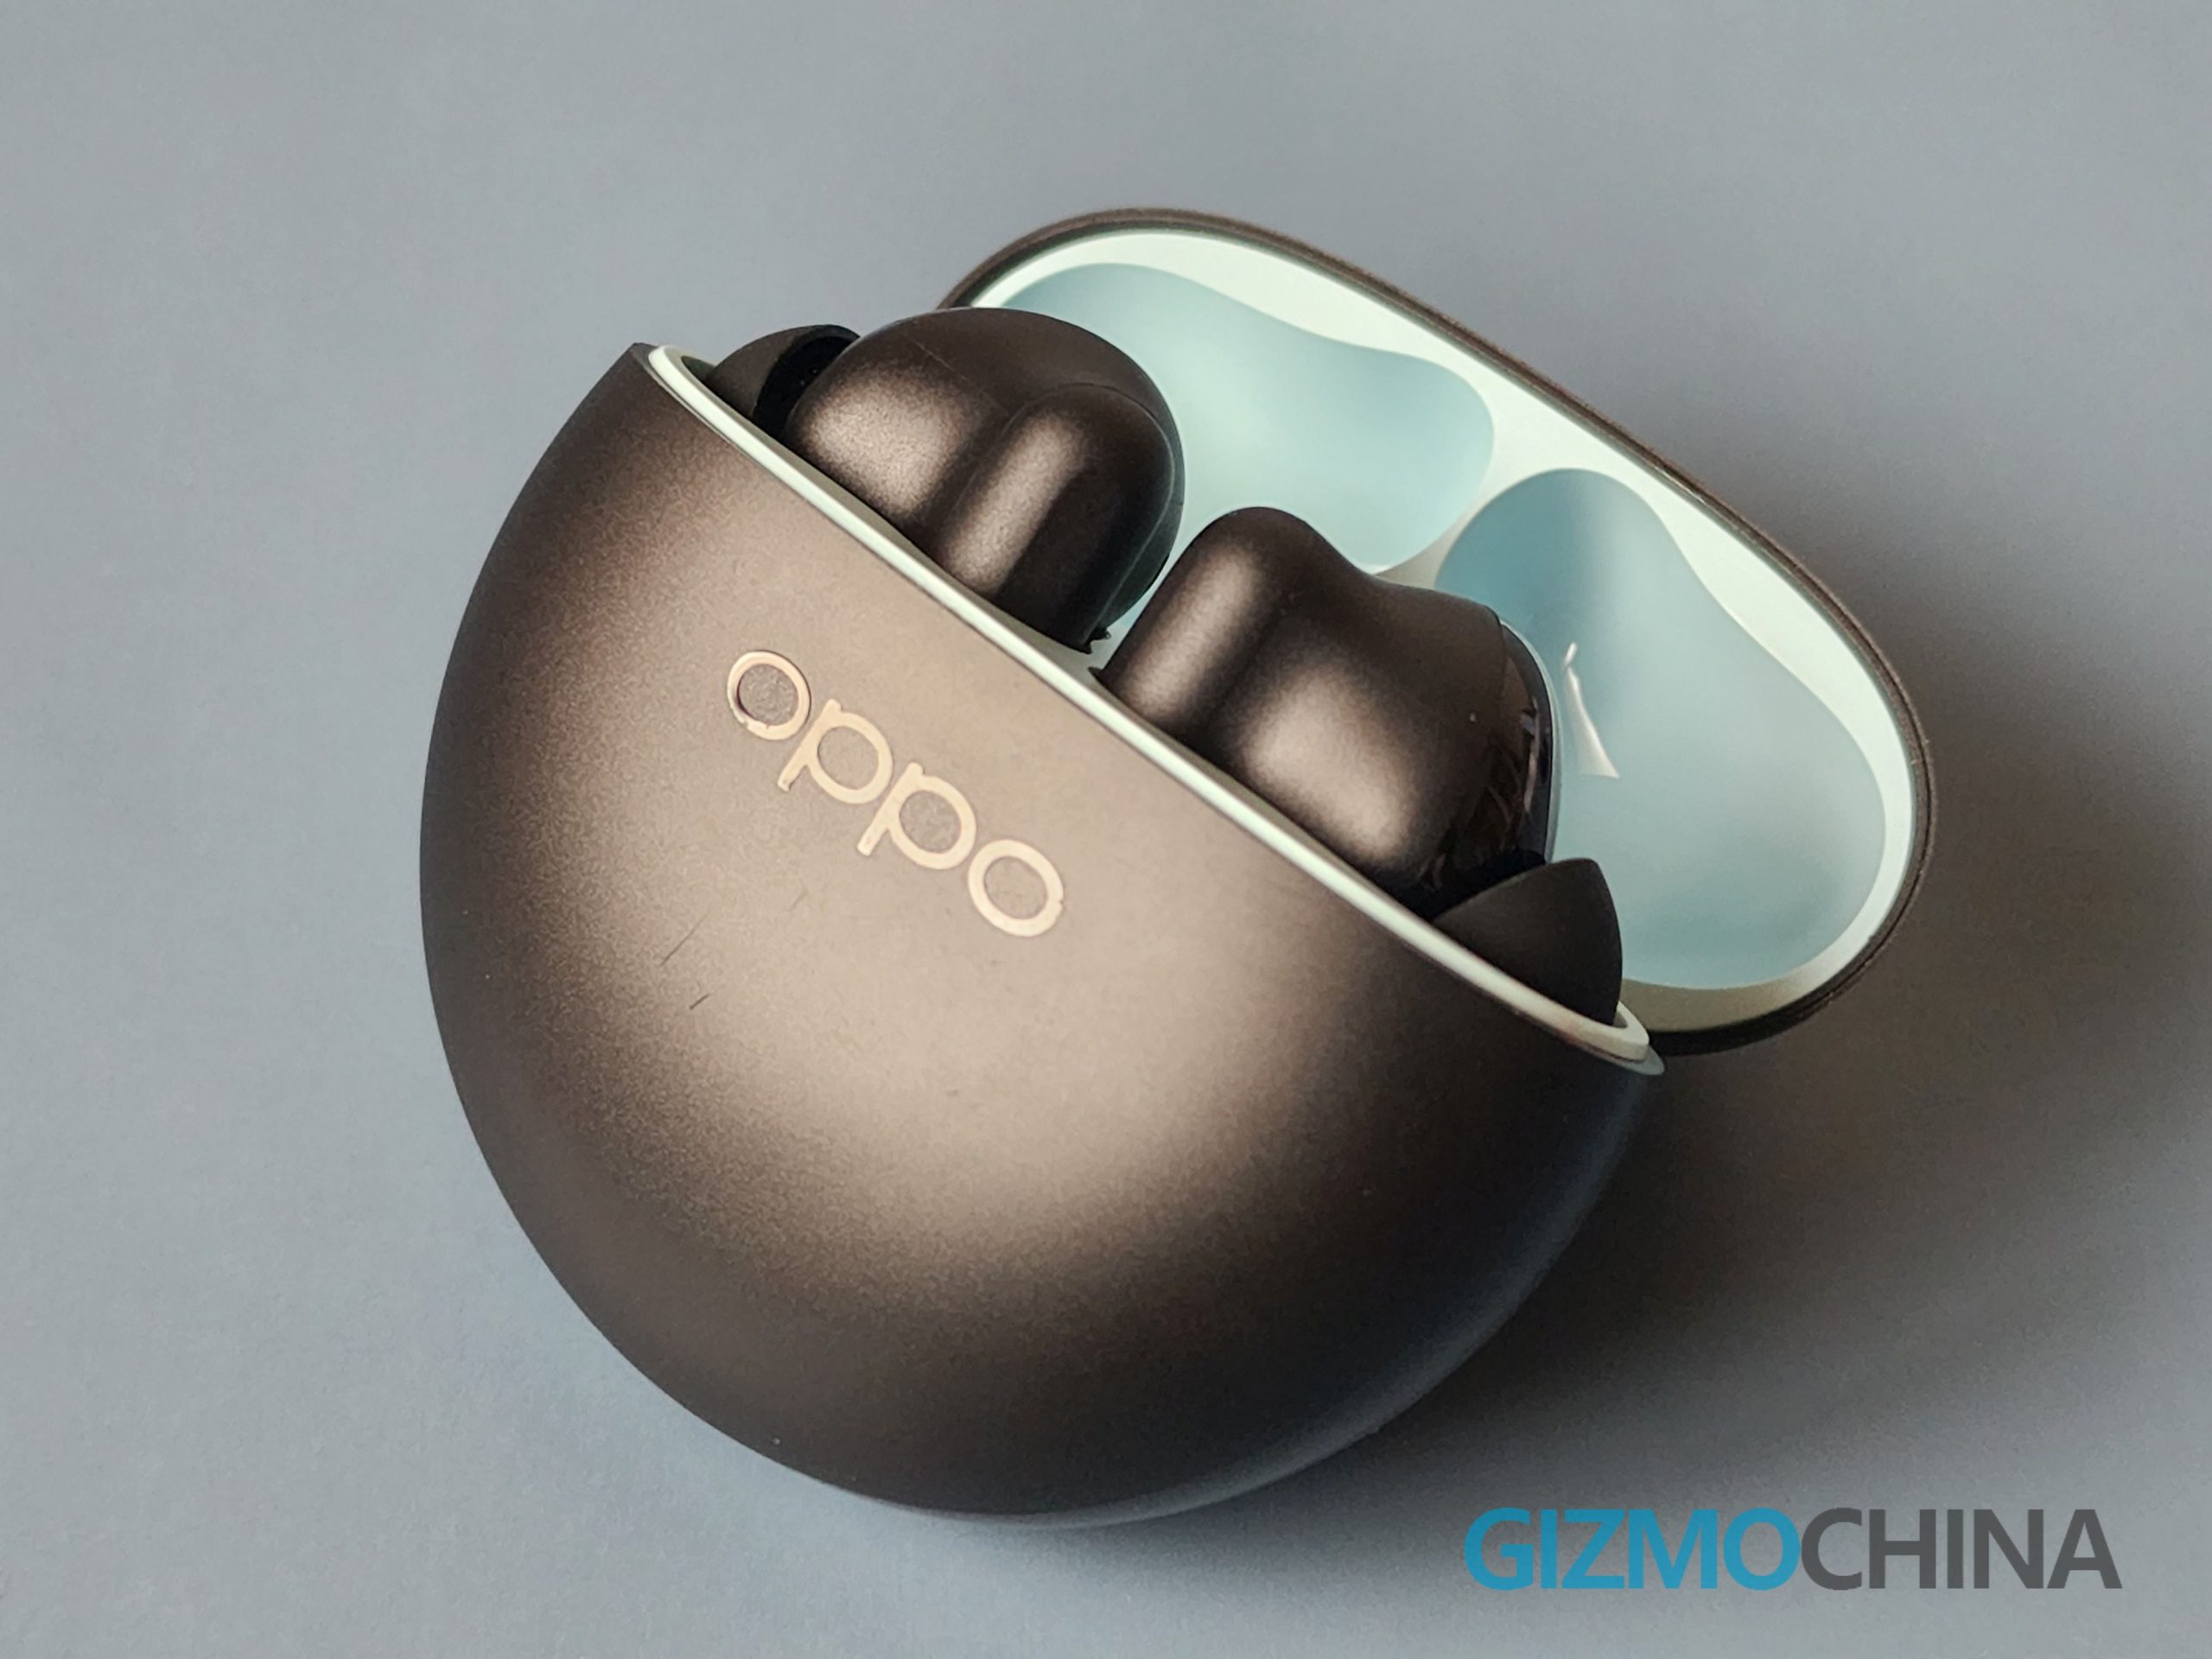 OPPO Enco X2 review: Worthy successor to Enco X true wireless earbuds